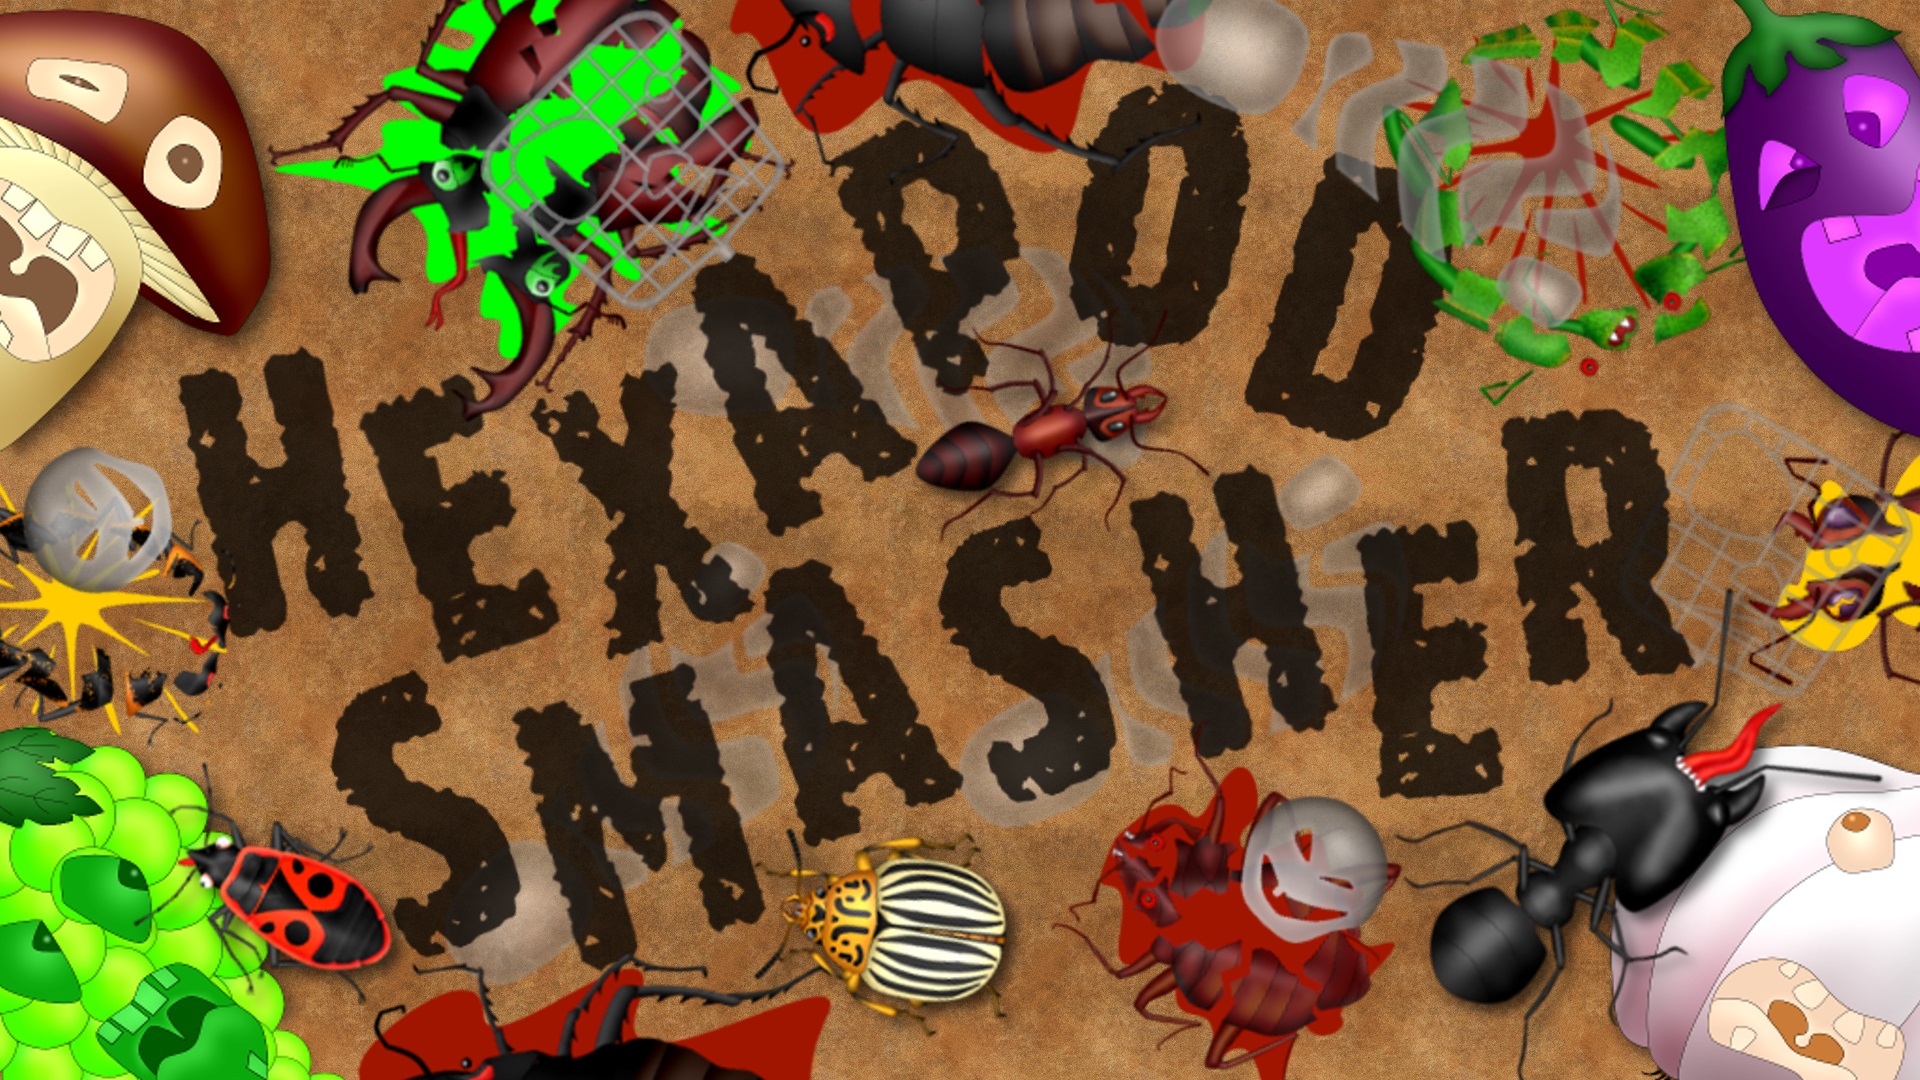 Hexapod Smasher